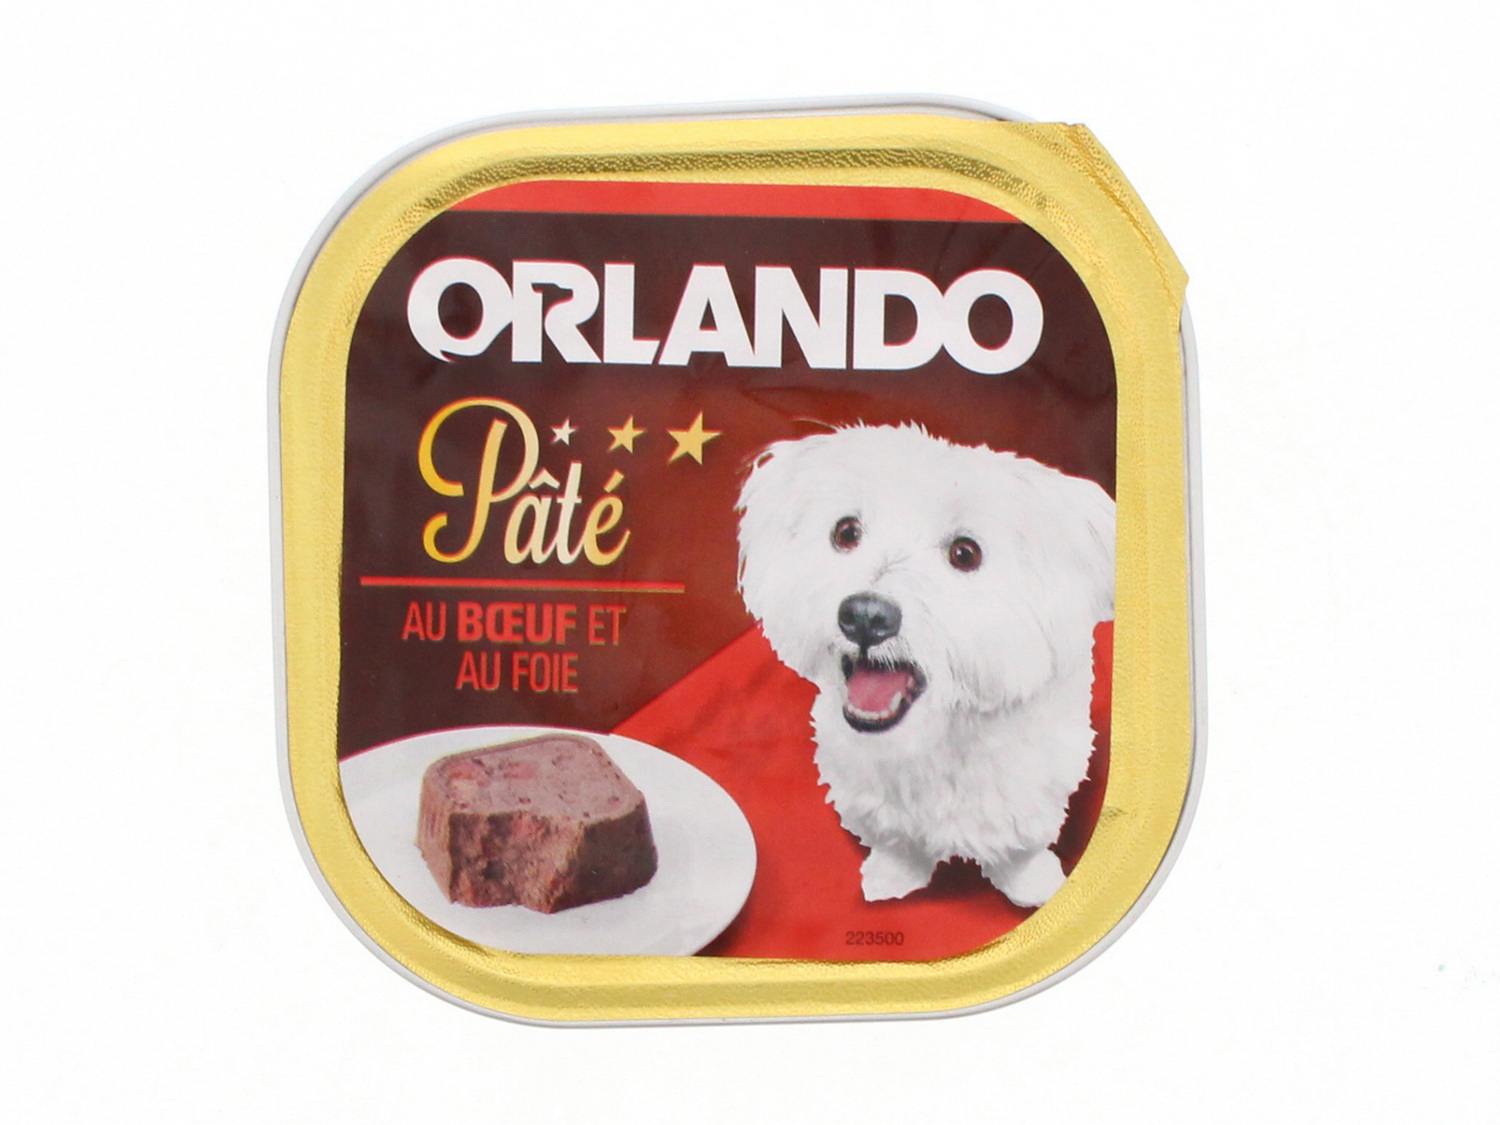 Terrines pour chien , le prix 0.44 € 
- Le paquet de 300 g : 0,65 € (1 kg = ...